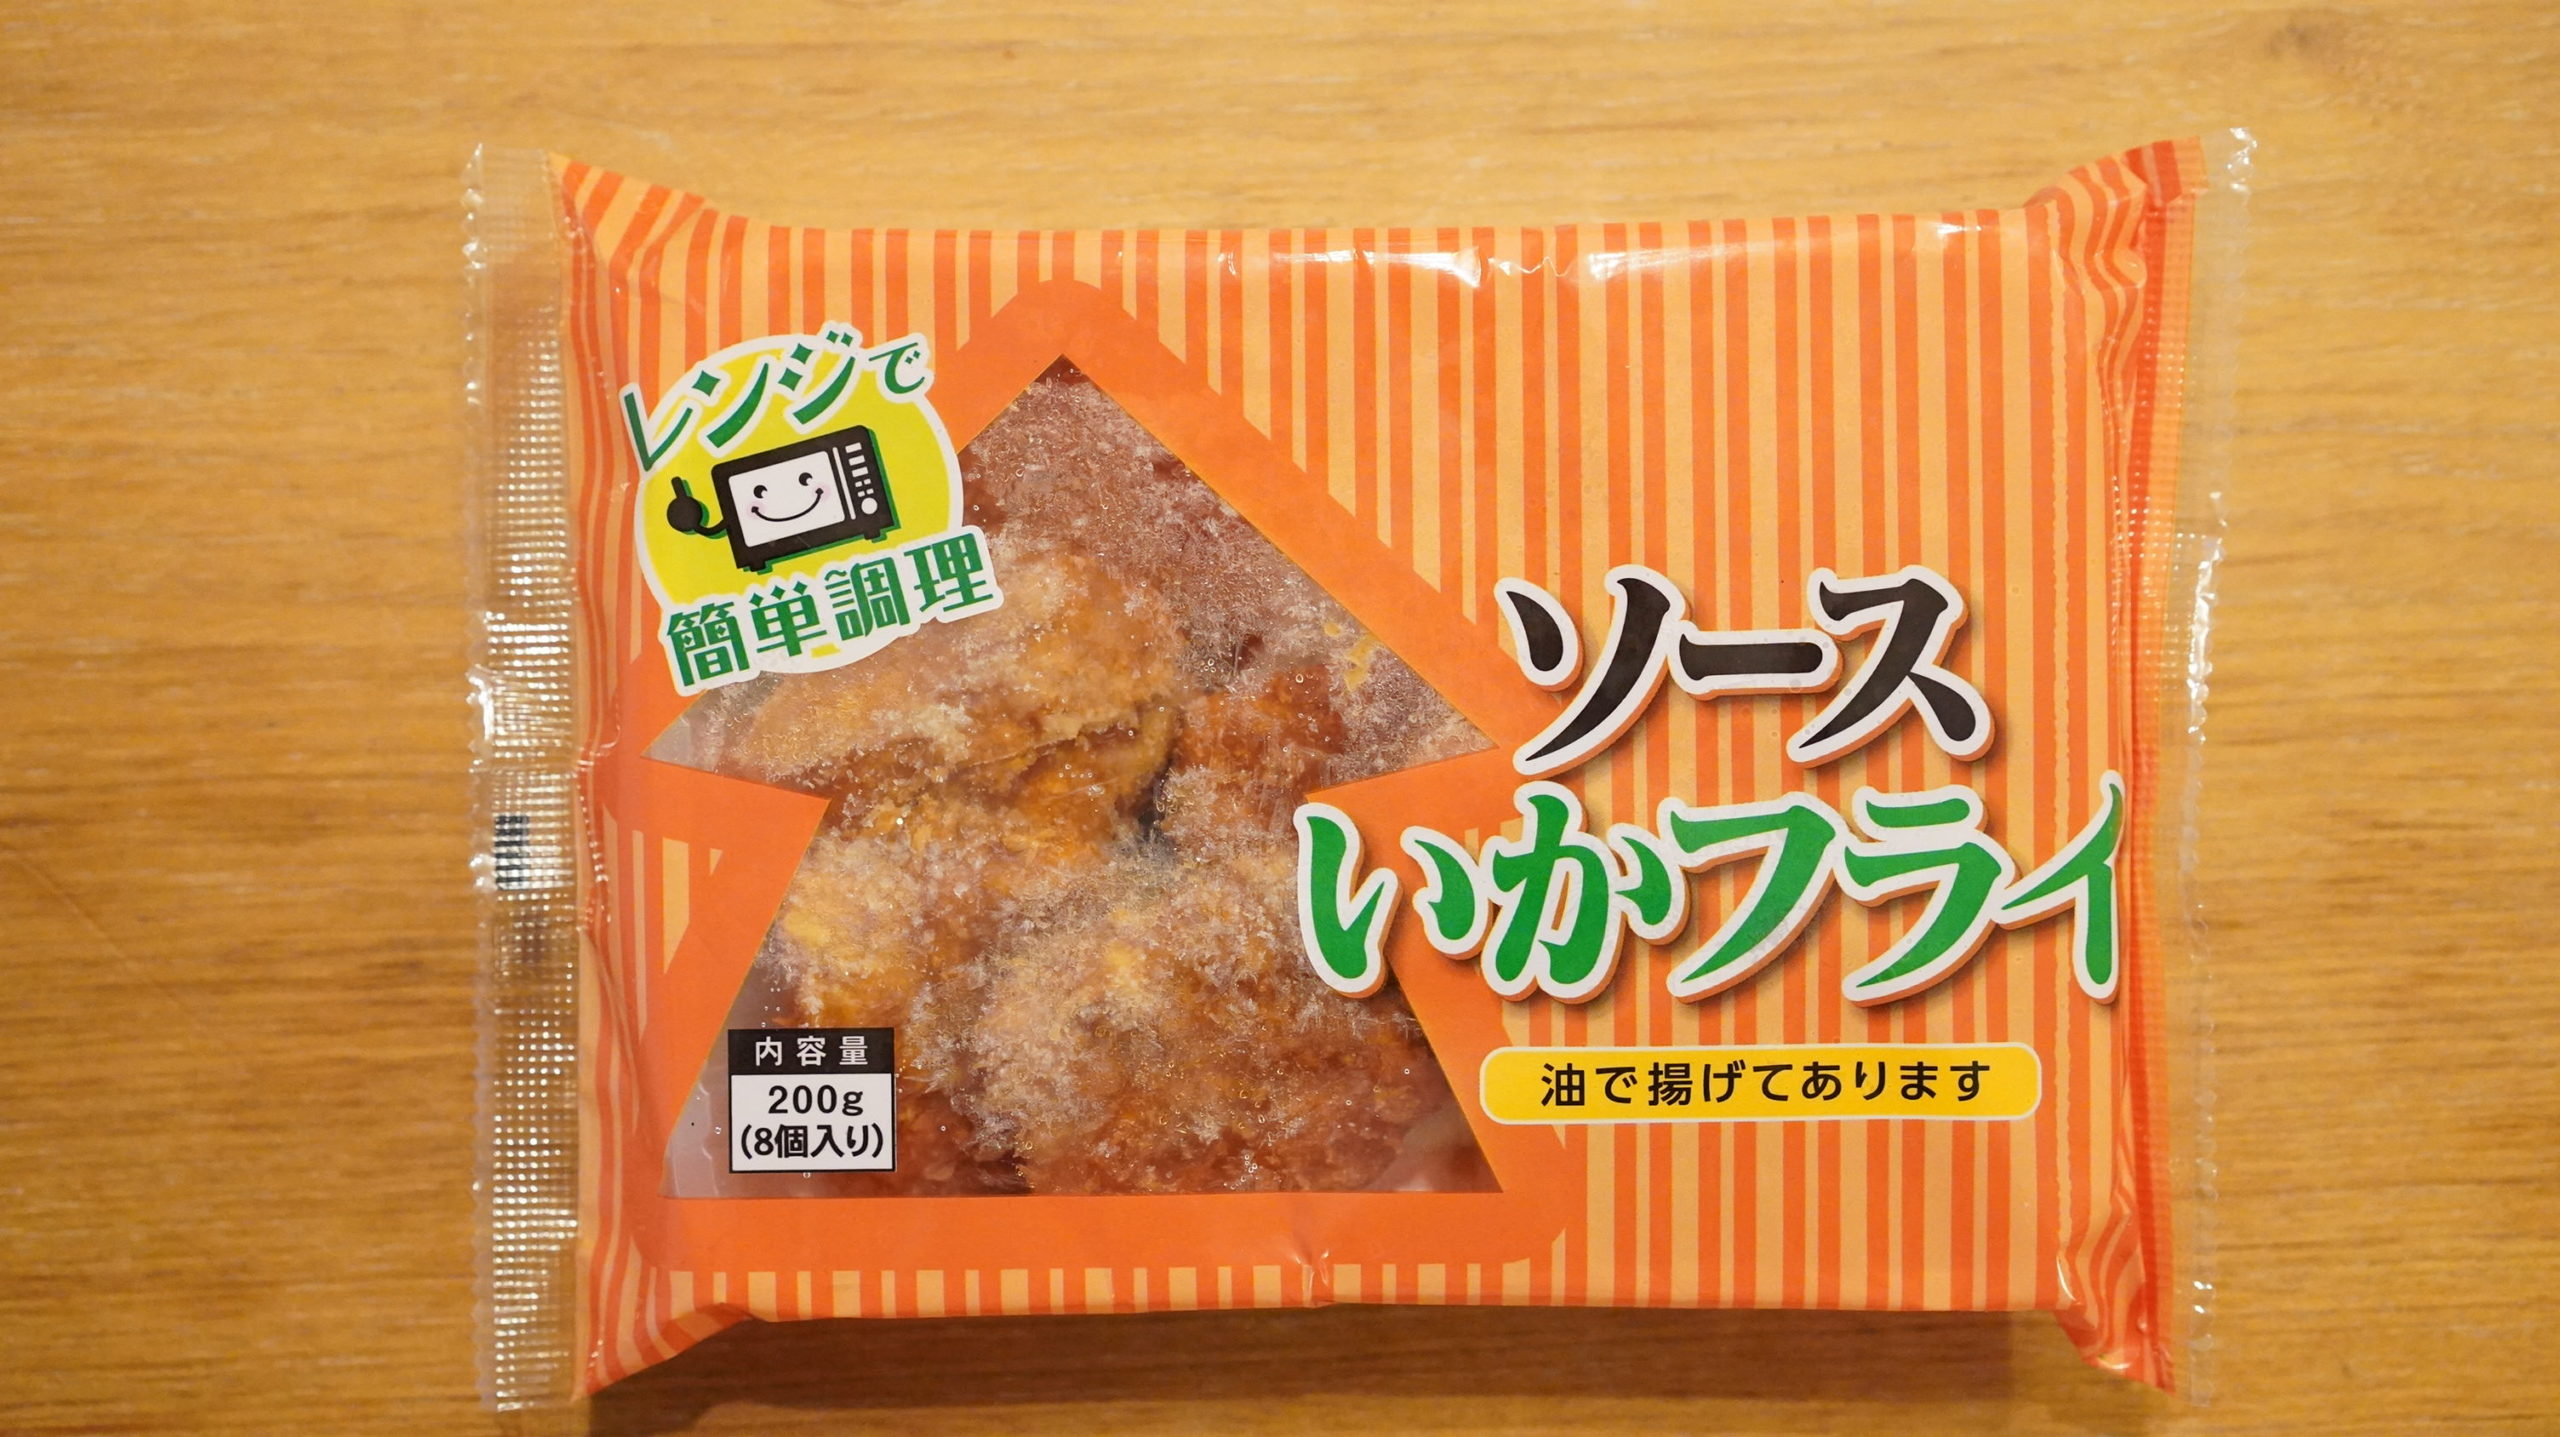 生協coop宅配の冷凍食品・ニチレイ「ソースイカフライ」のパッケージ写真